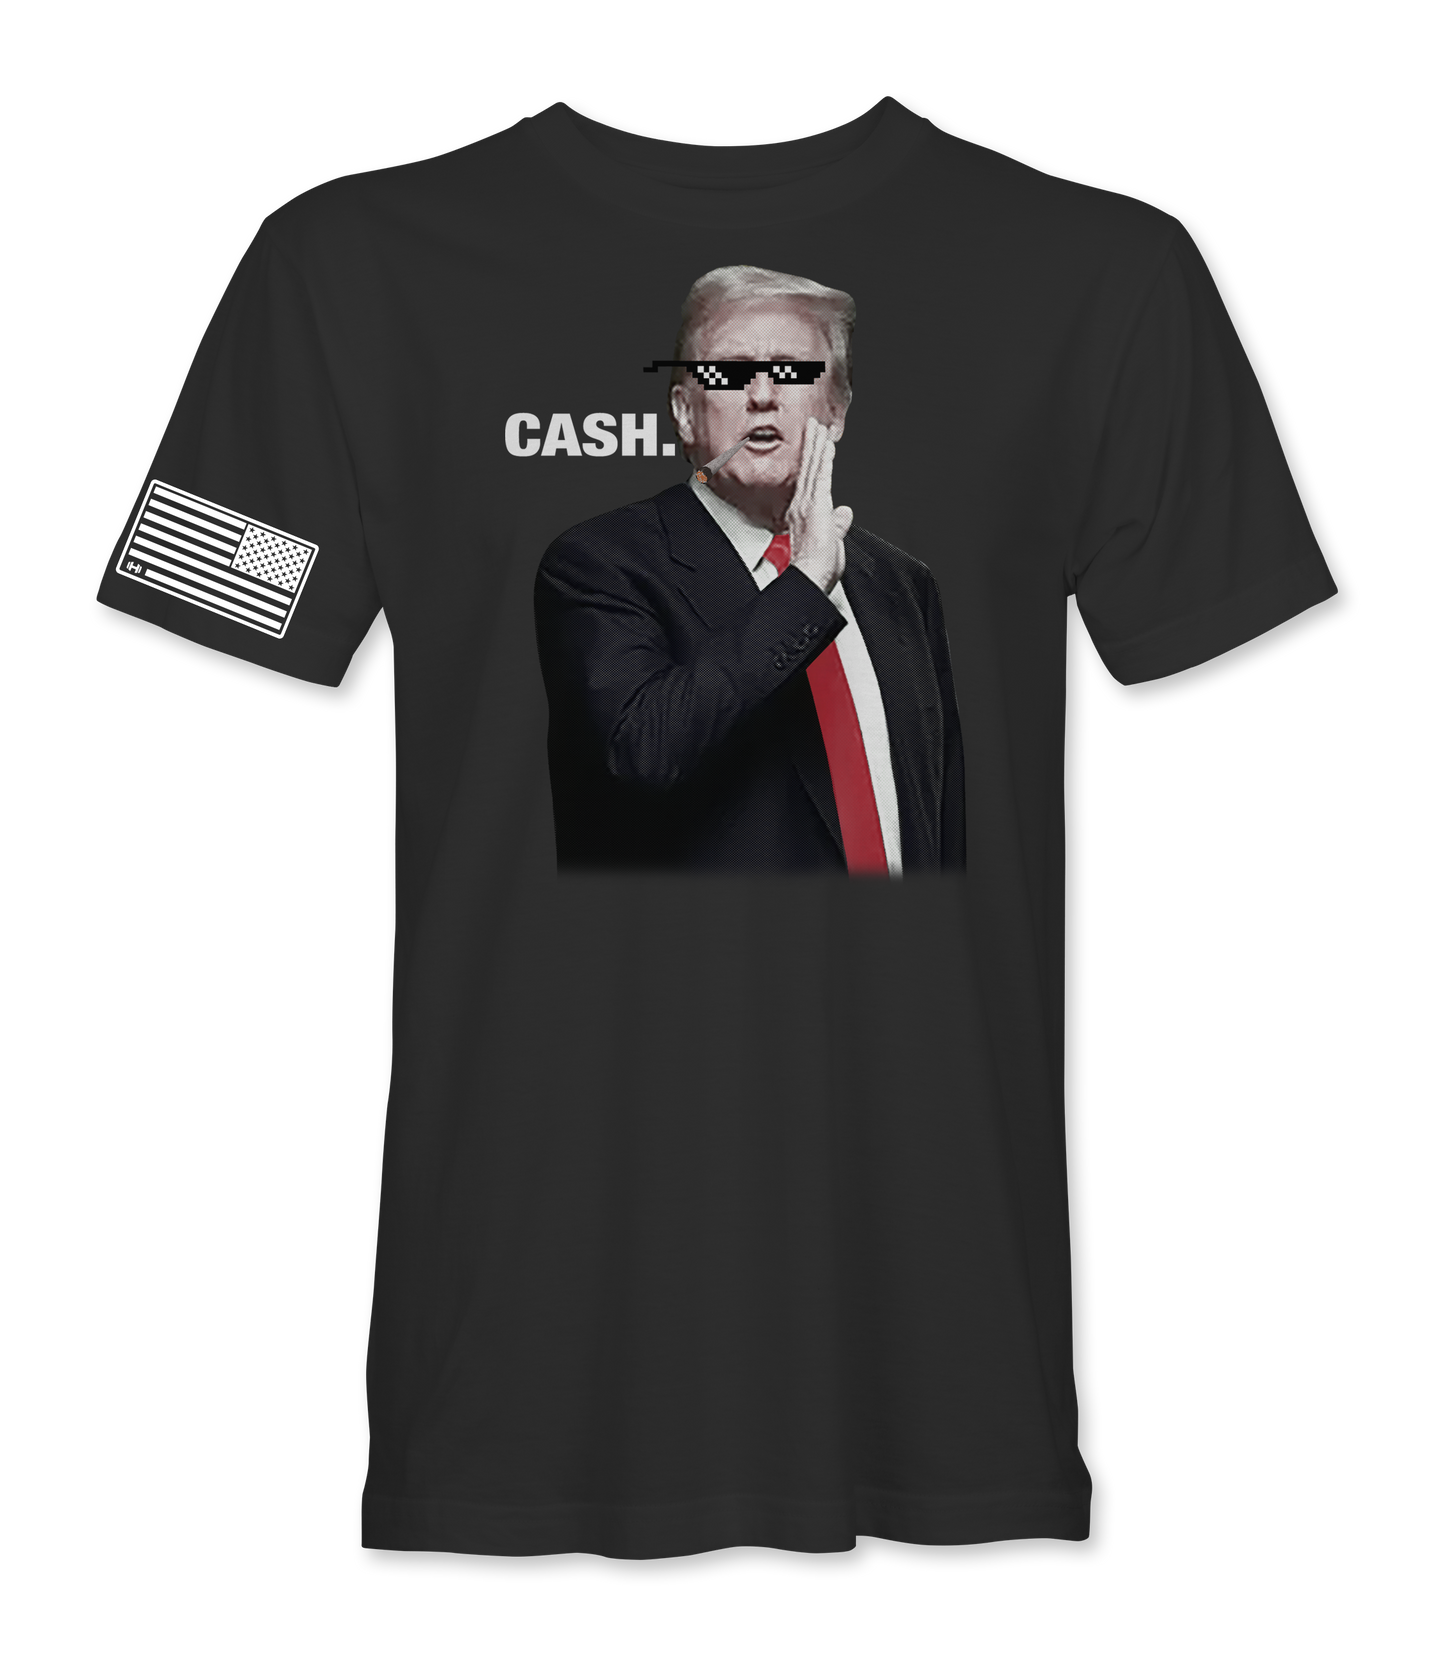 Trump "Cash" T-Shirt